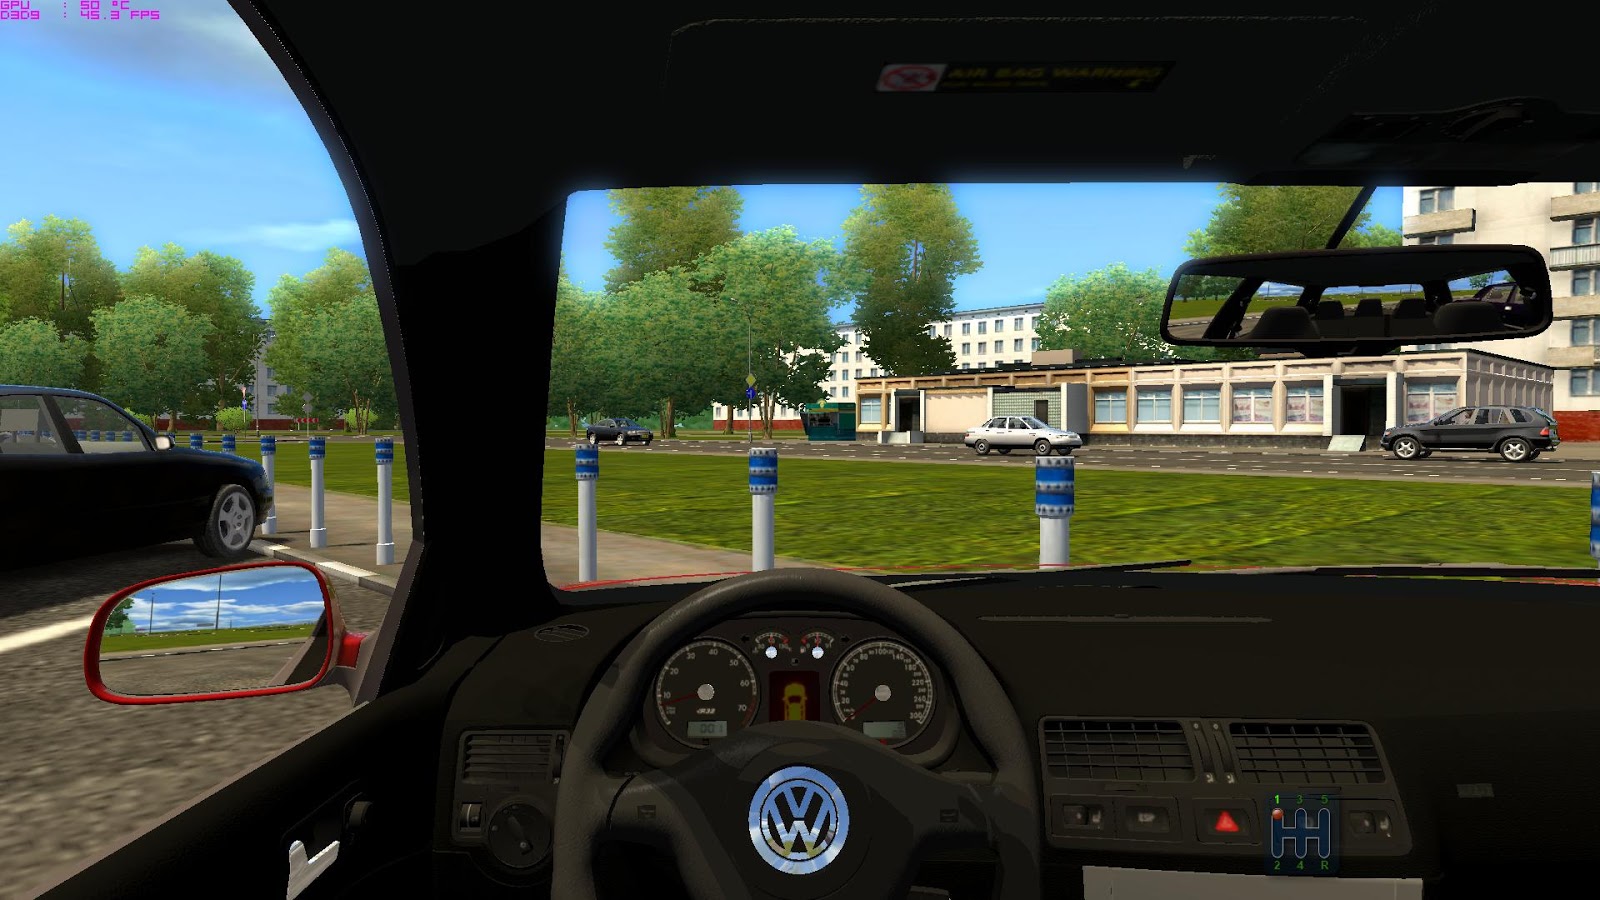 БТР City car Driving. City car Driving описание игры. Golf 4 в играх. City car Driving Map Mod. City car driving автомат